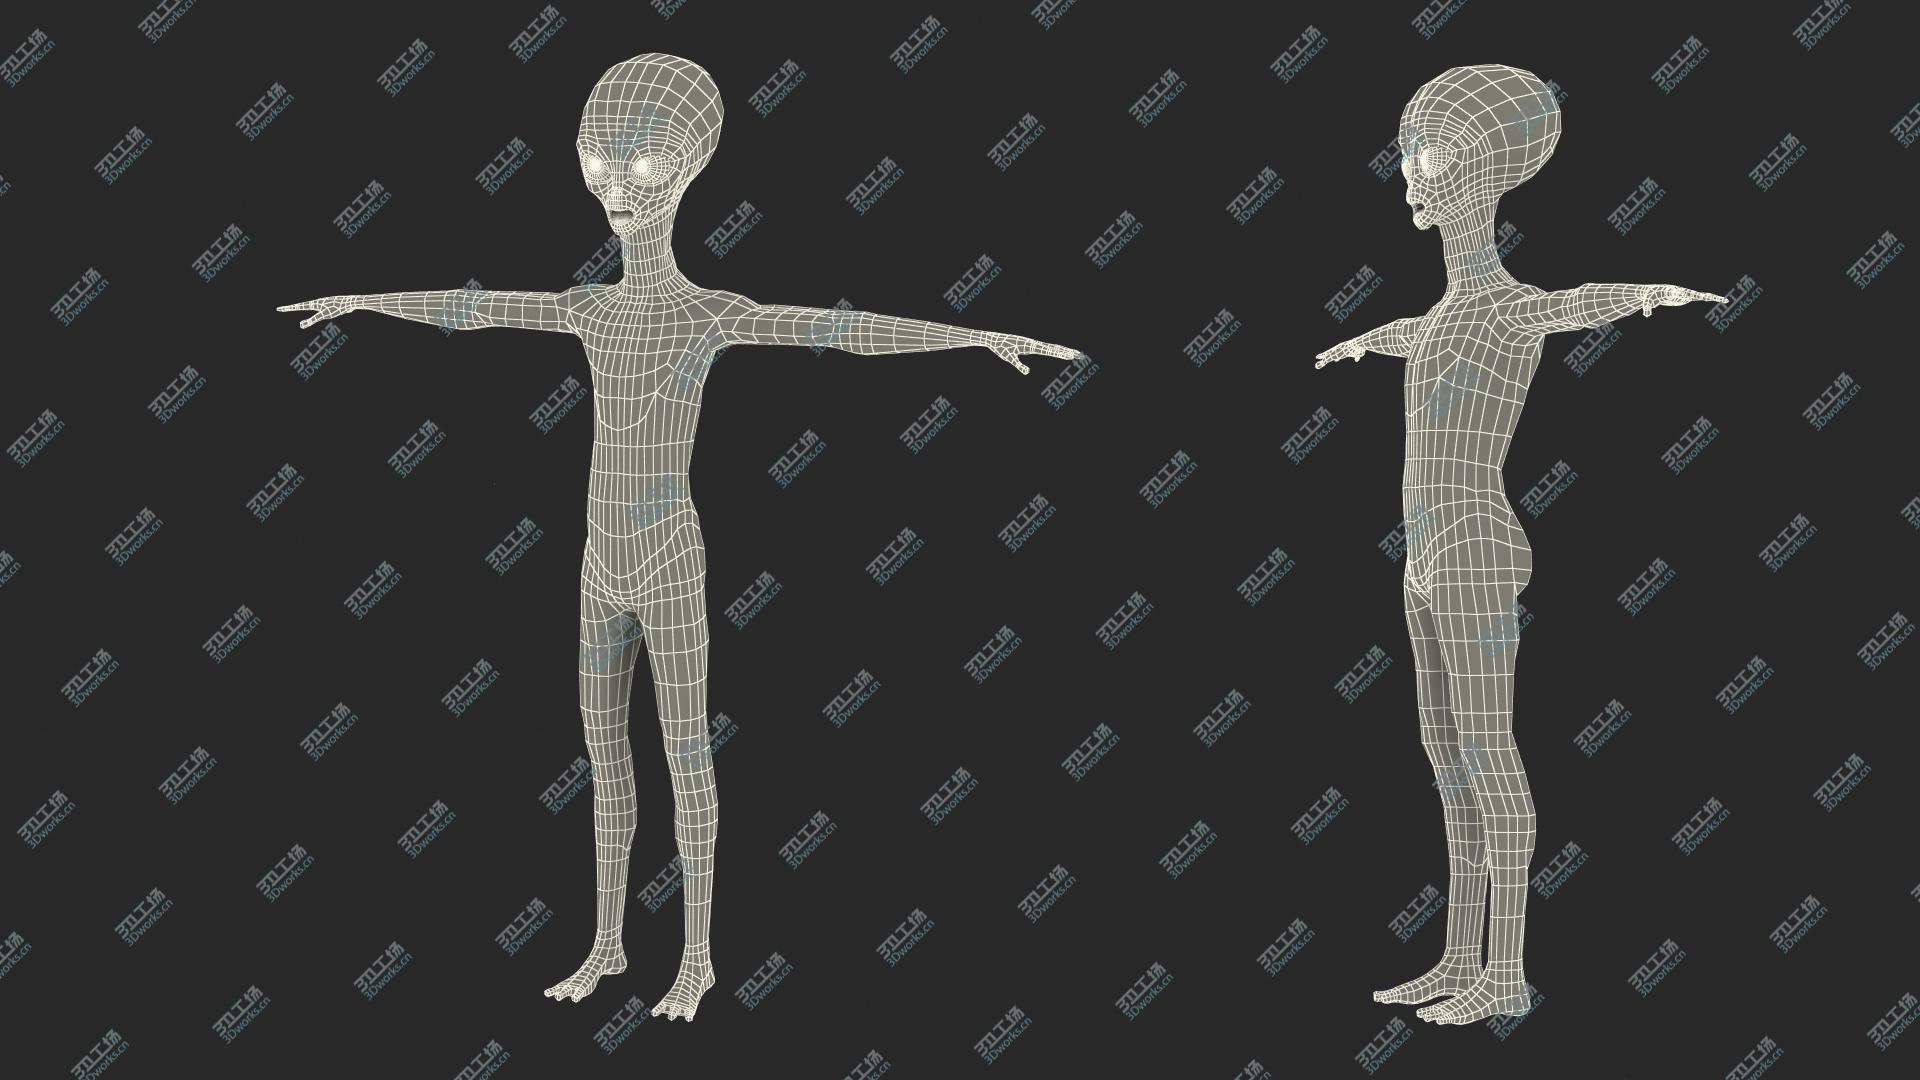 images/goods_img/202104093/3D Alien Rigged model/4.jpg